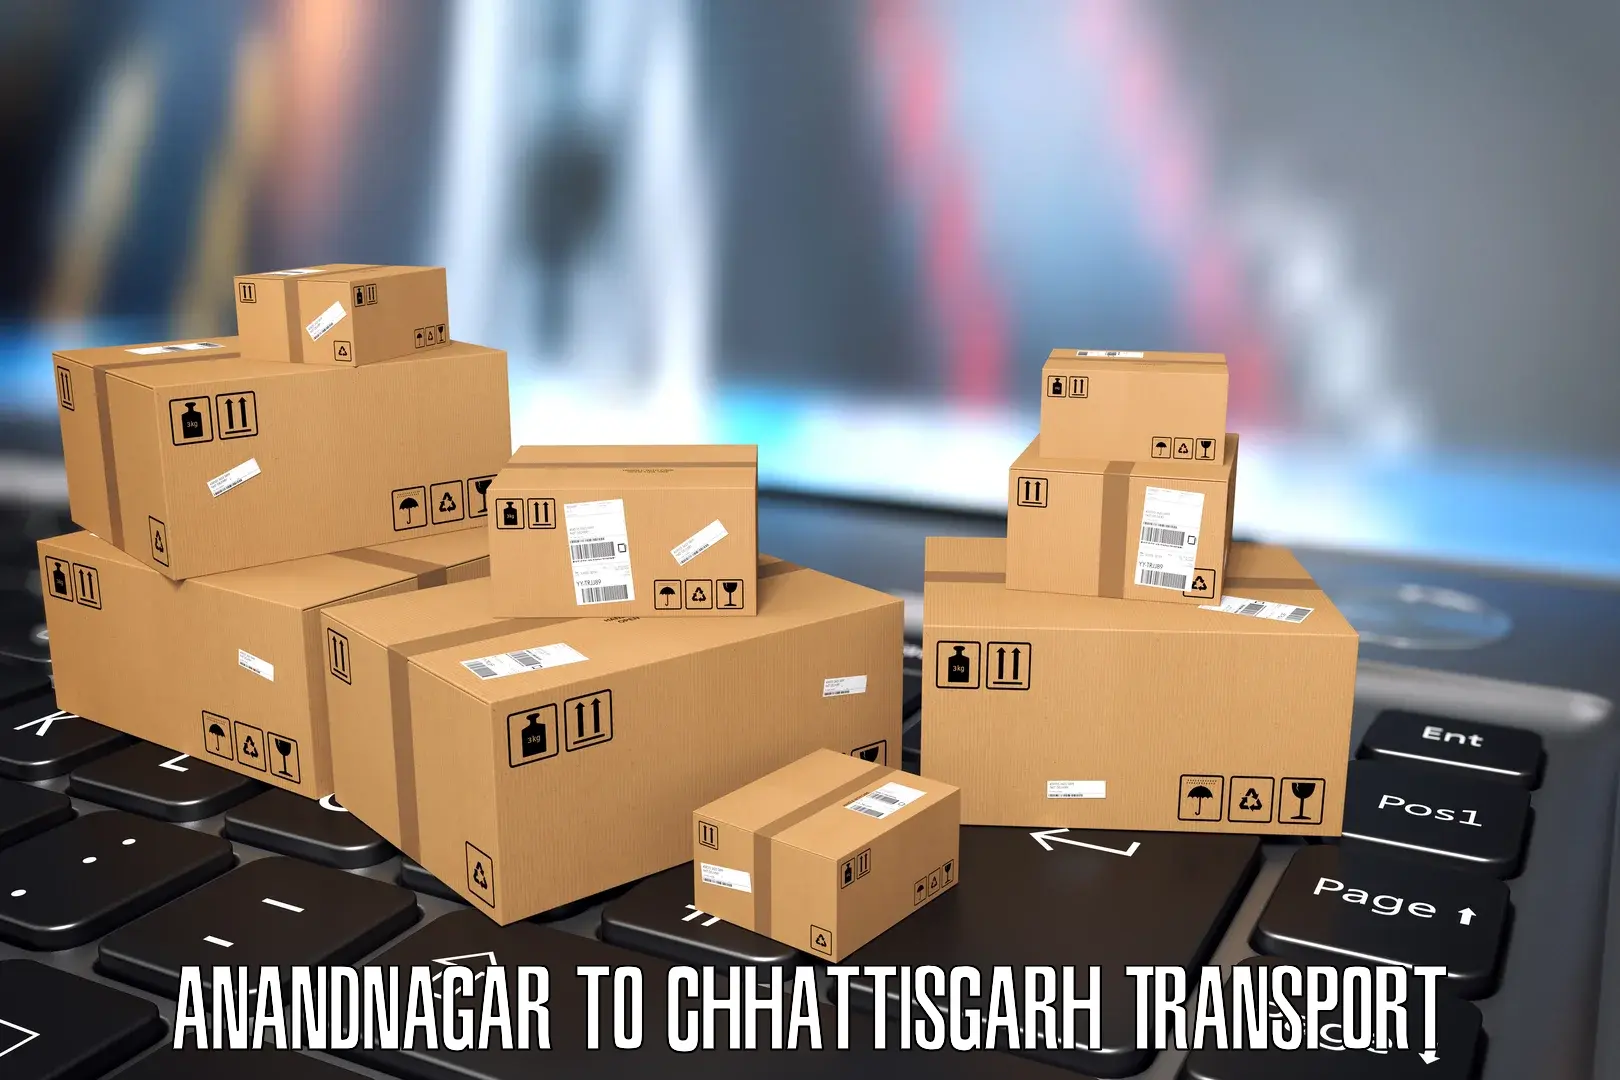 Express transport services Anandnagar to Raigarh Chhattisgarh